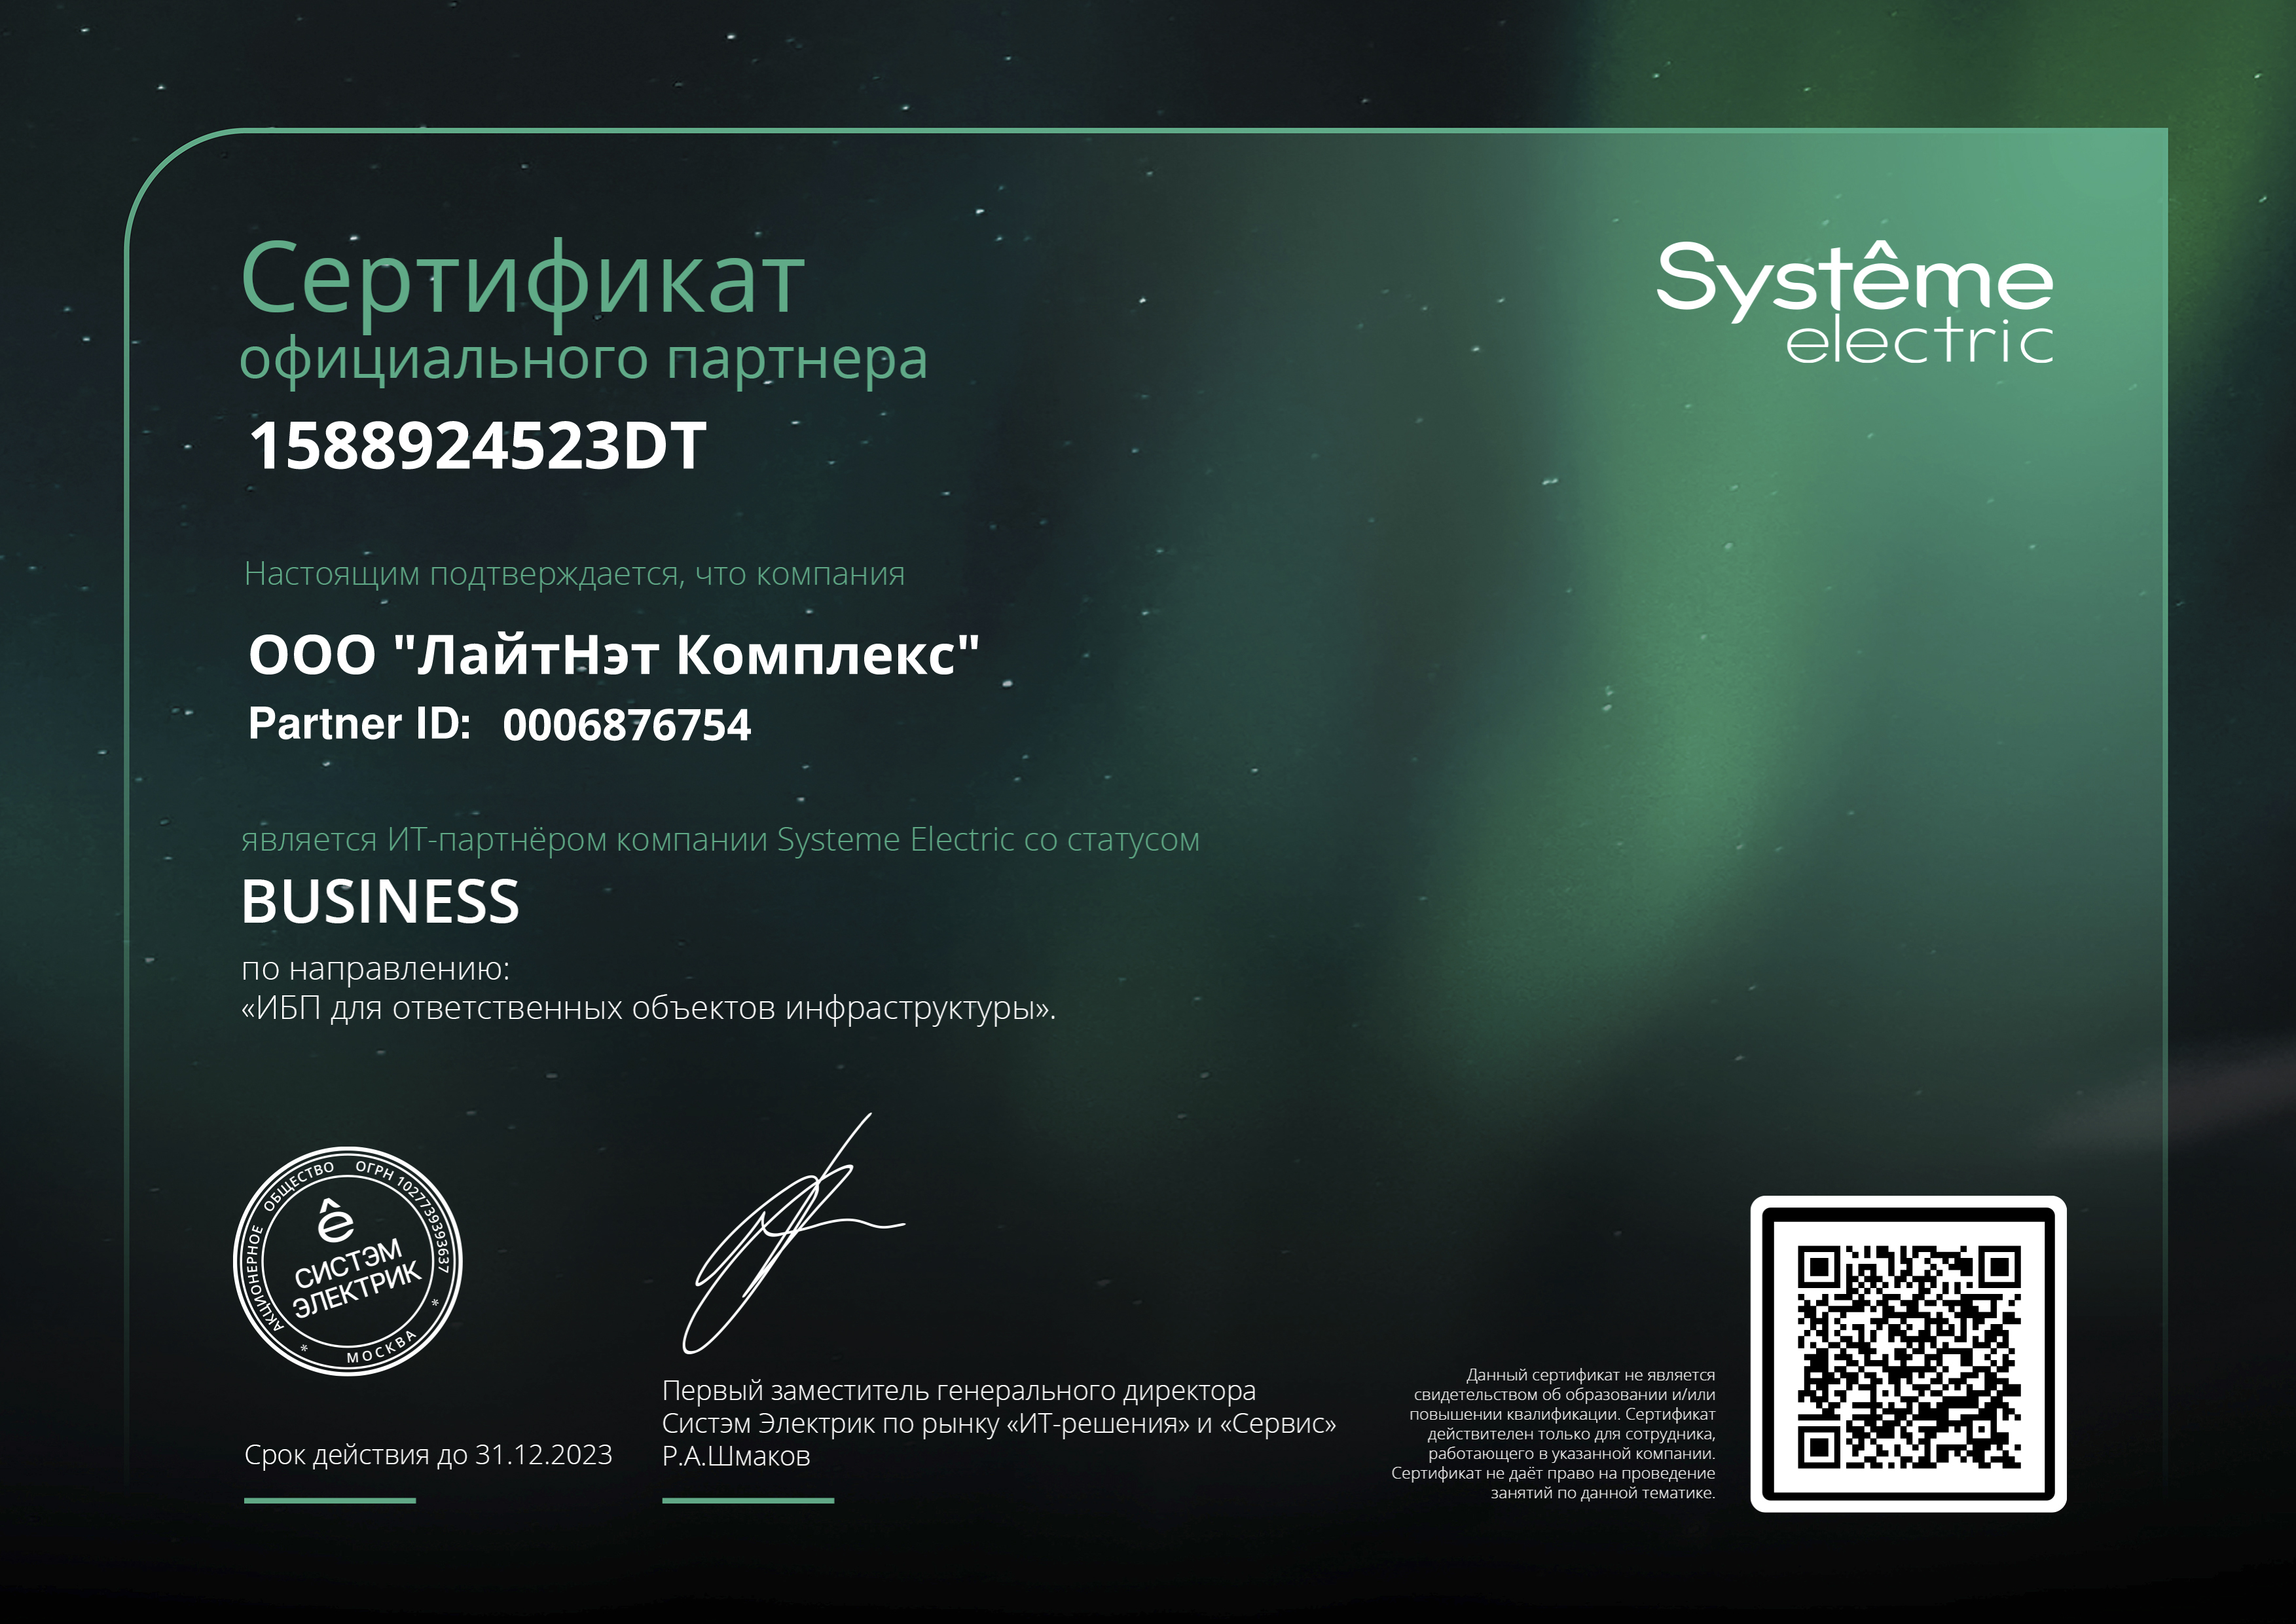 System Electric - официальный партнер со статусом Business